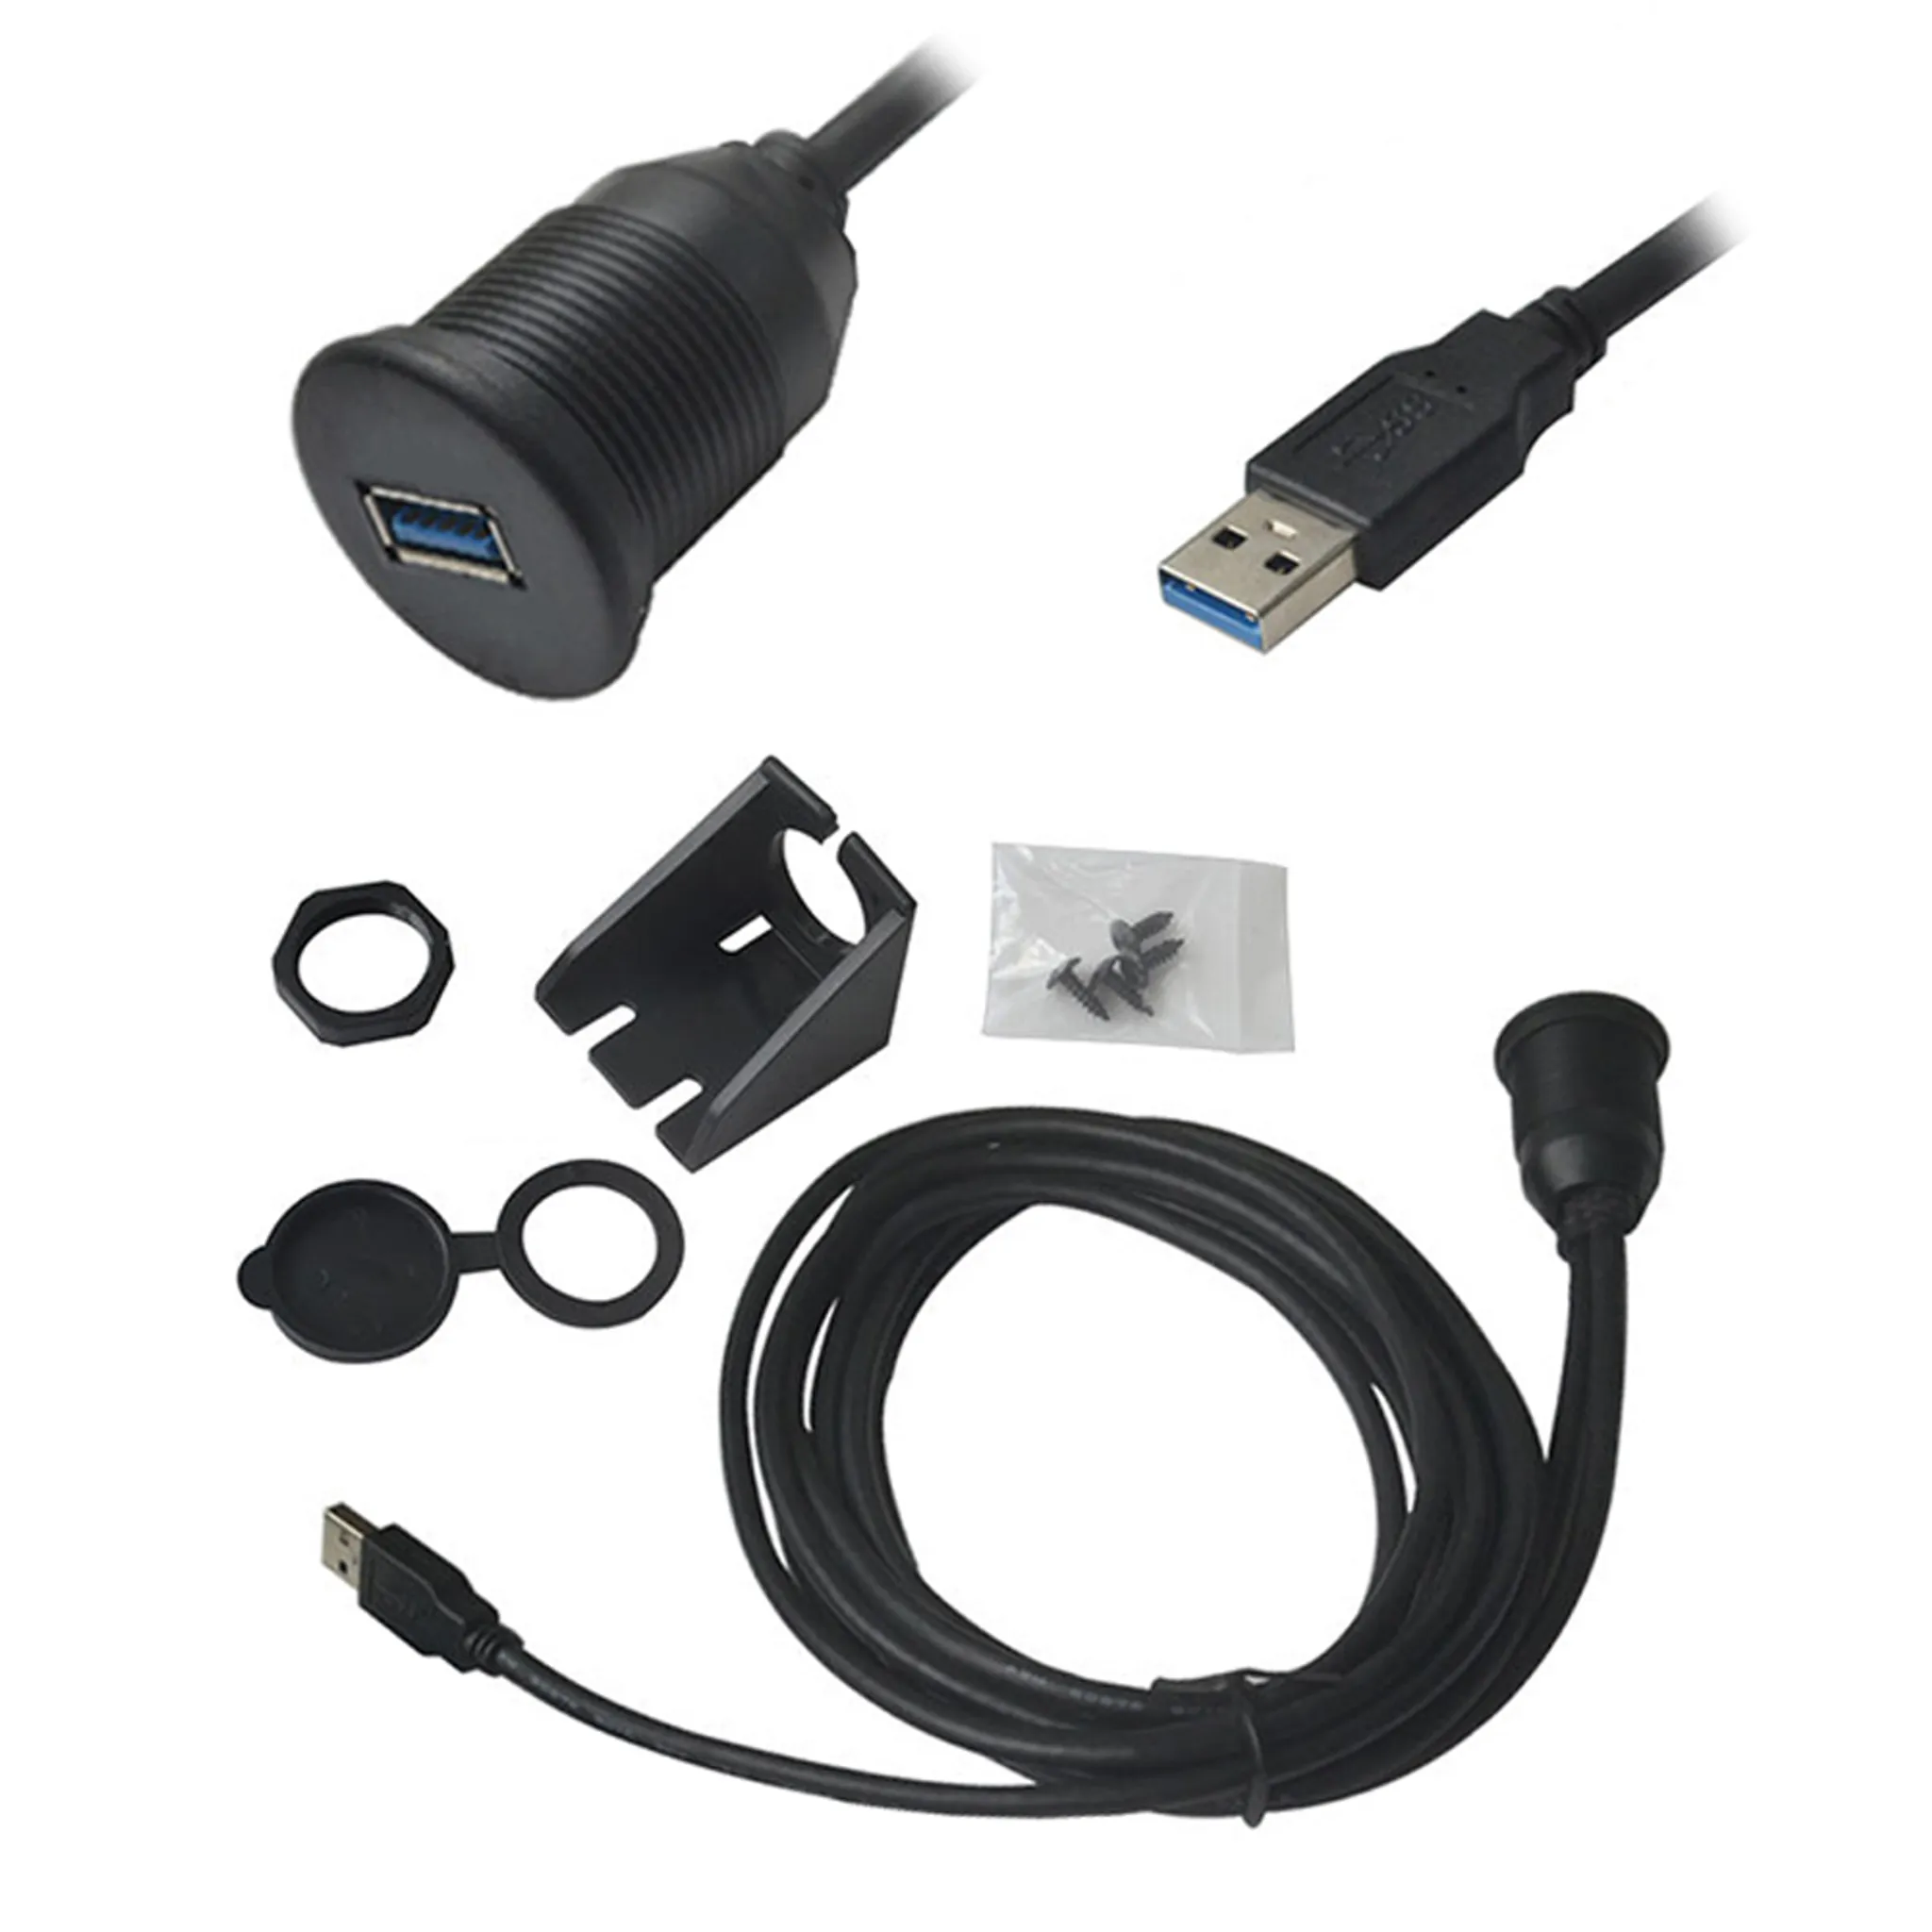 L00 USB 3.0 Einbau Buchse Kabel Adapter Verlängerung f KFZ Auto PC Boat  Motorrad